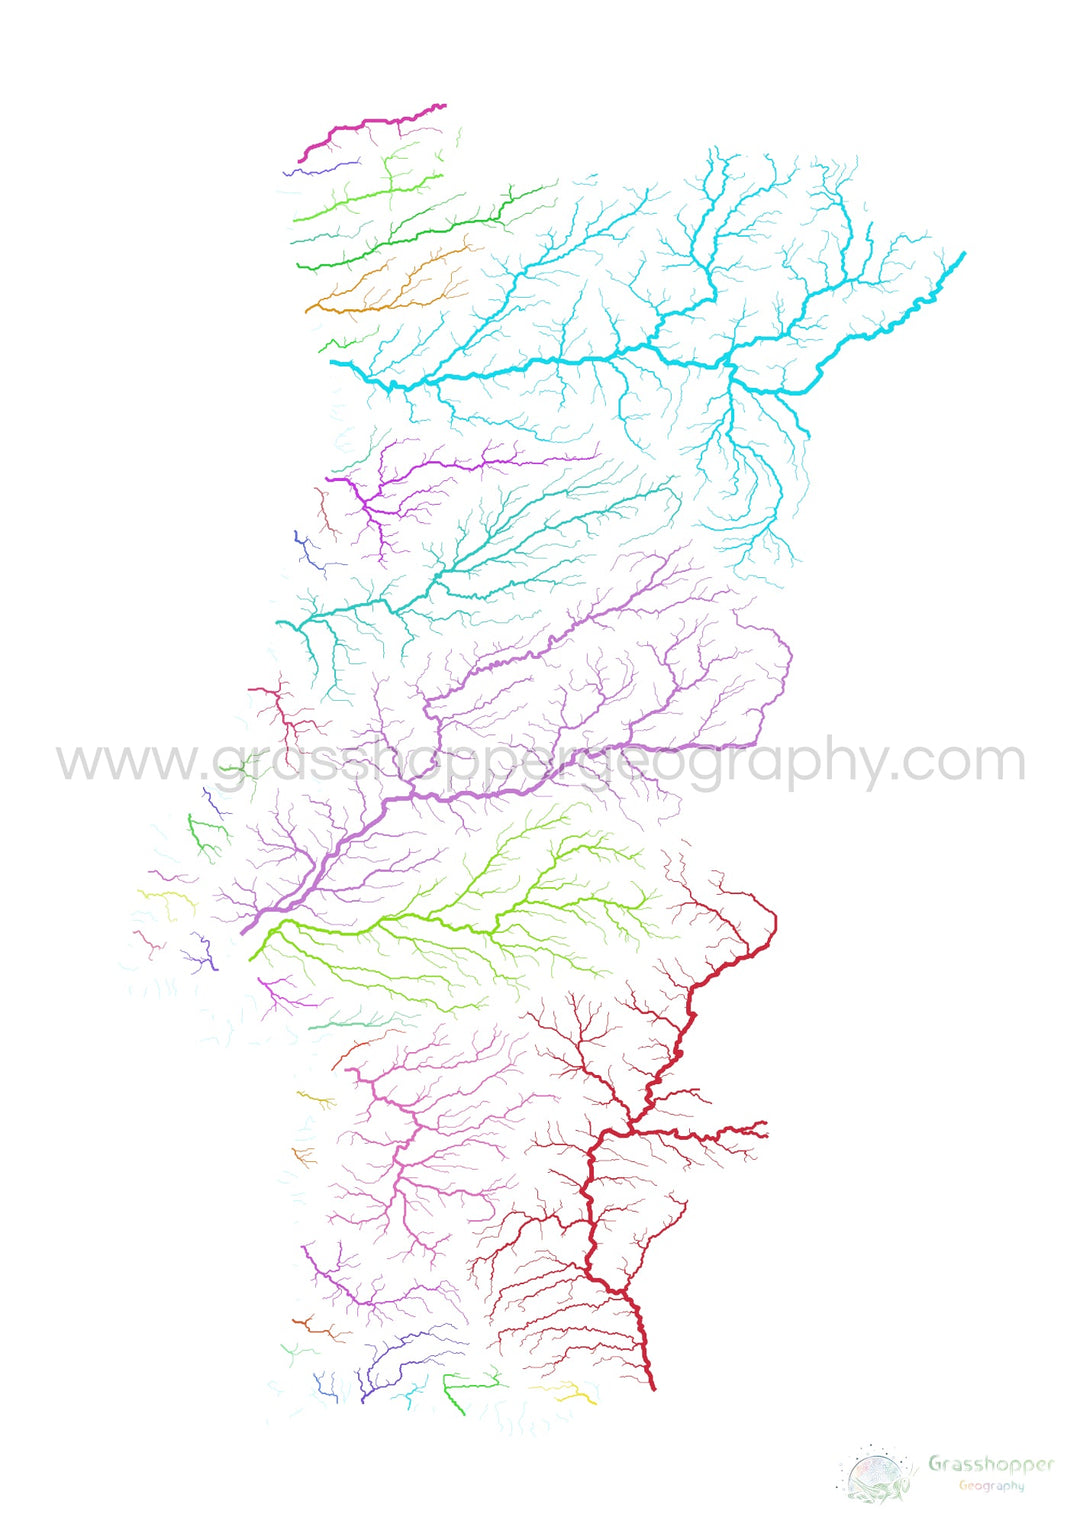 Portugal - Carte des bassins fluviaux, arc-en-ciel sur blanc - Fine Art Print